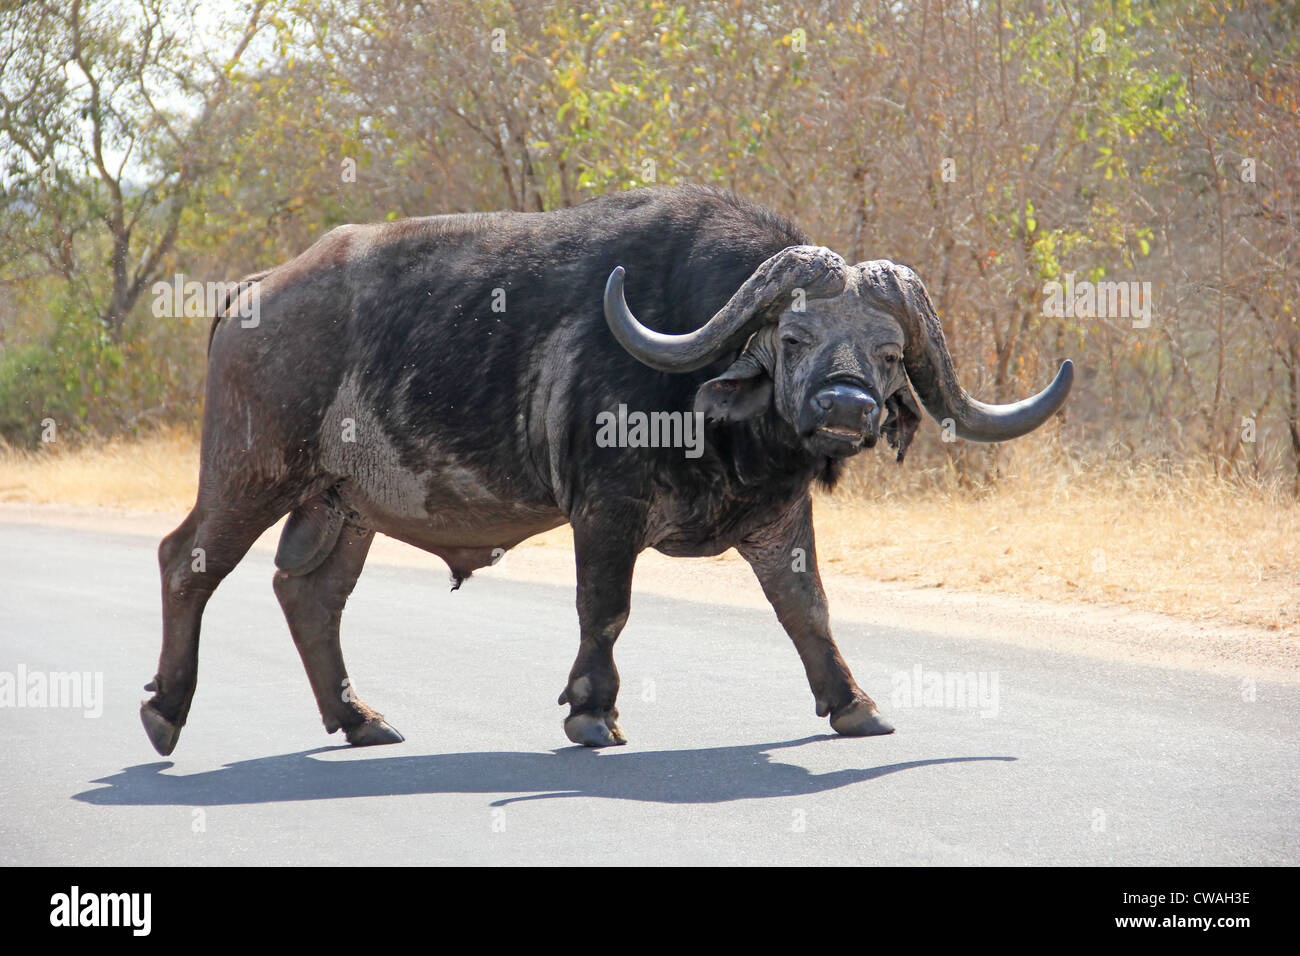 Buffalo mirando mientras camina en la carretera Foto de stock